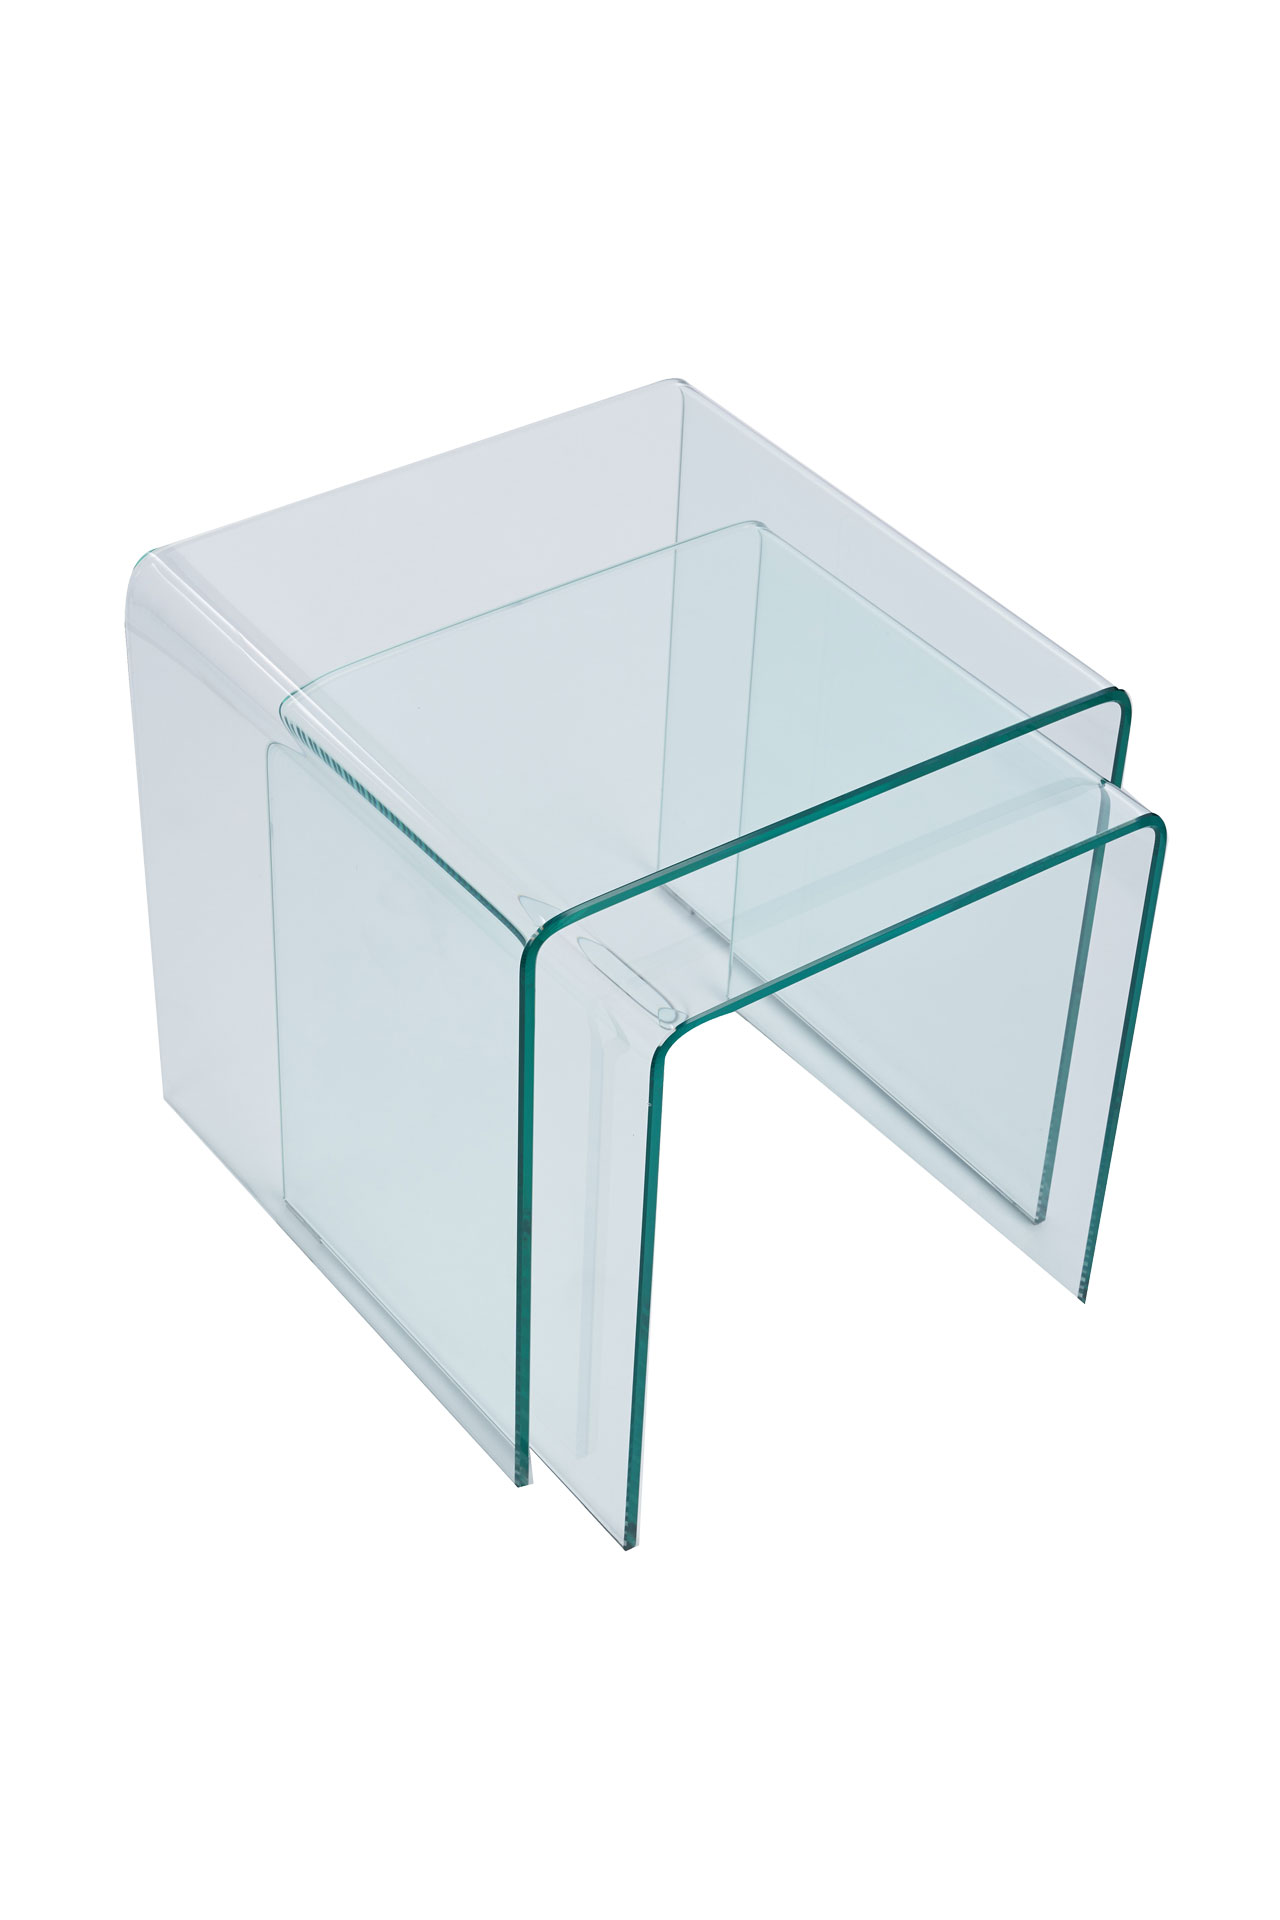 Formgebogener Beistelltisch aus Glas